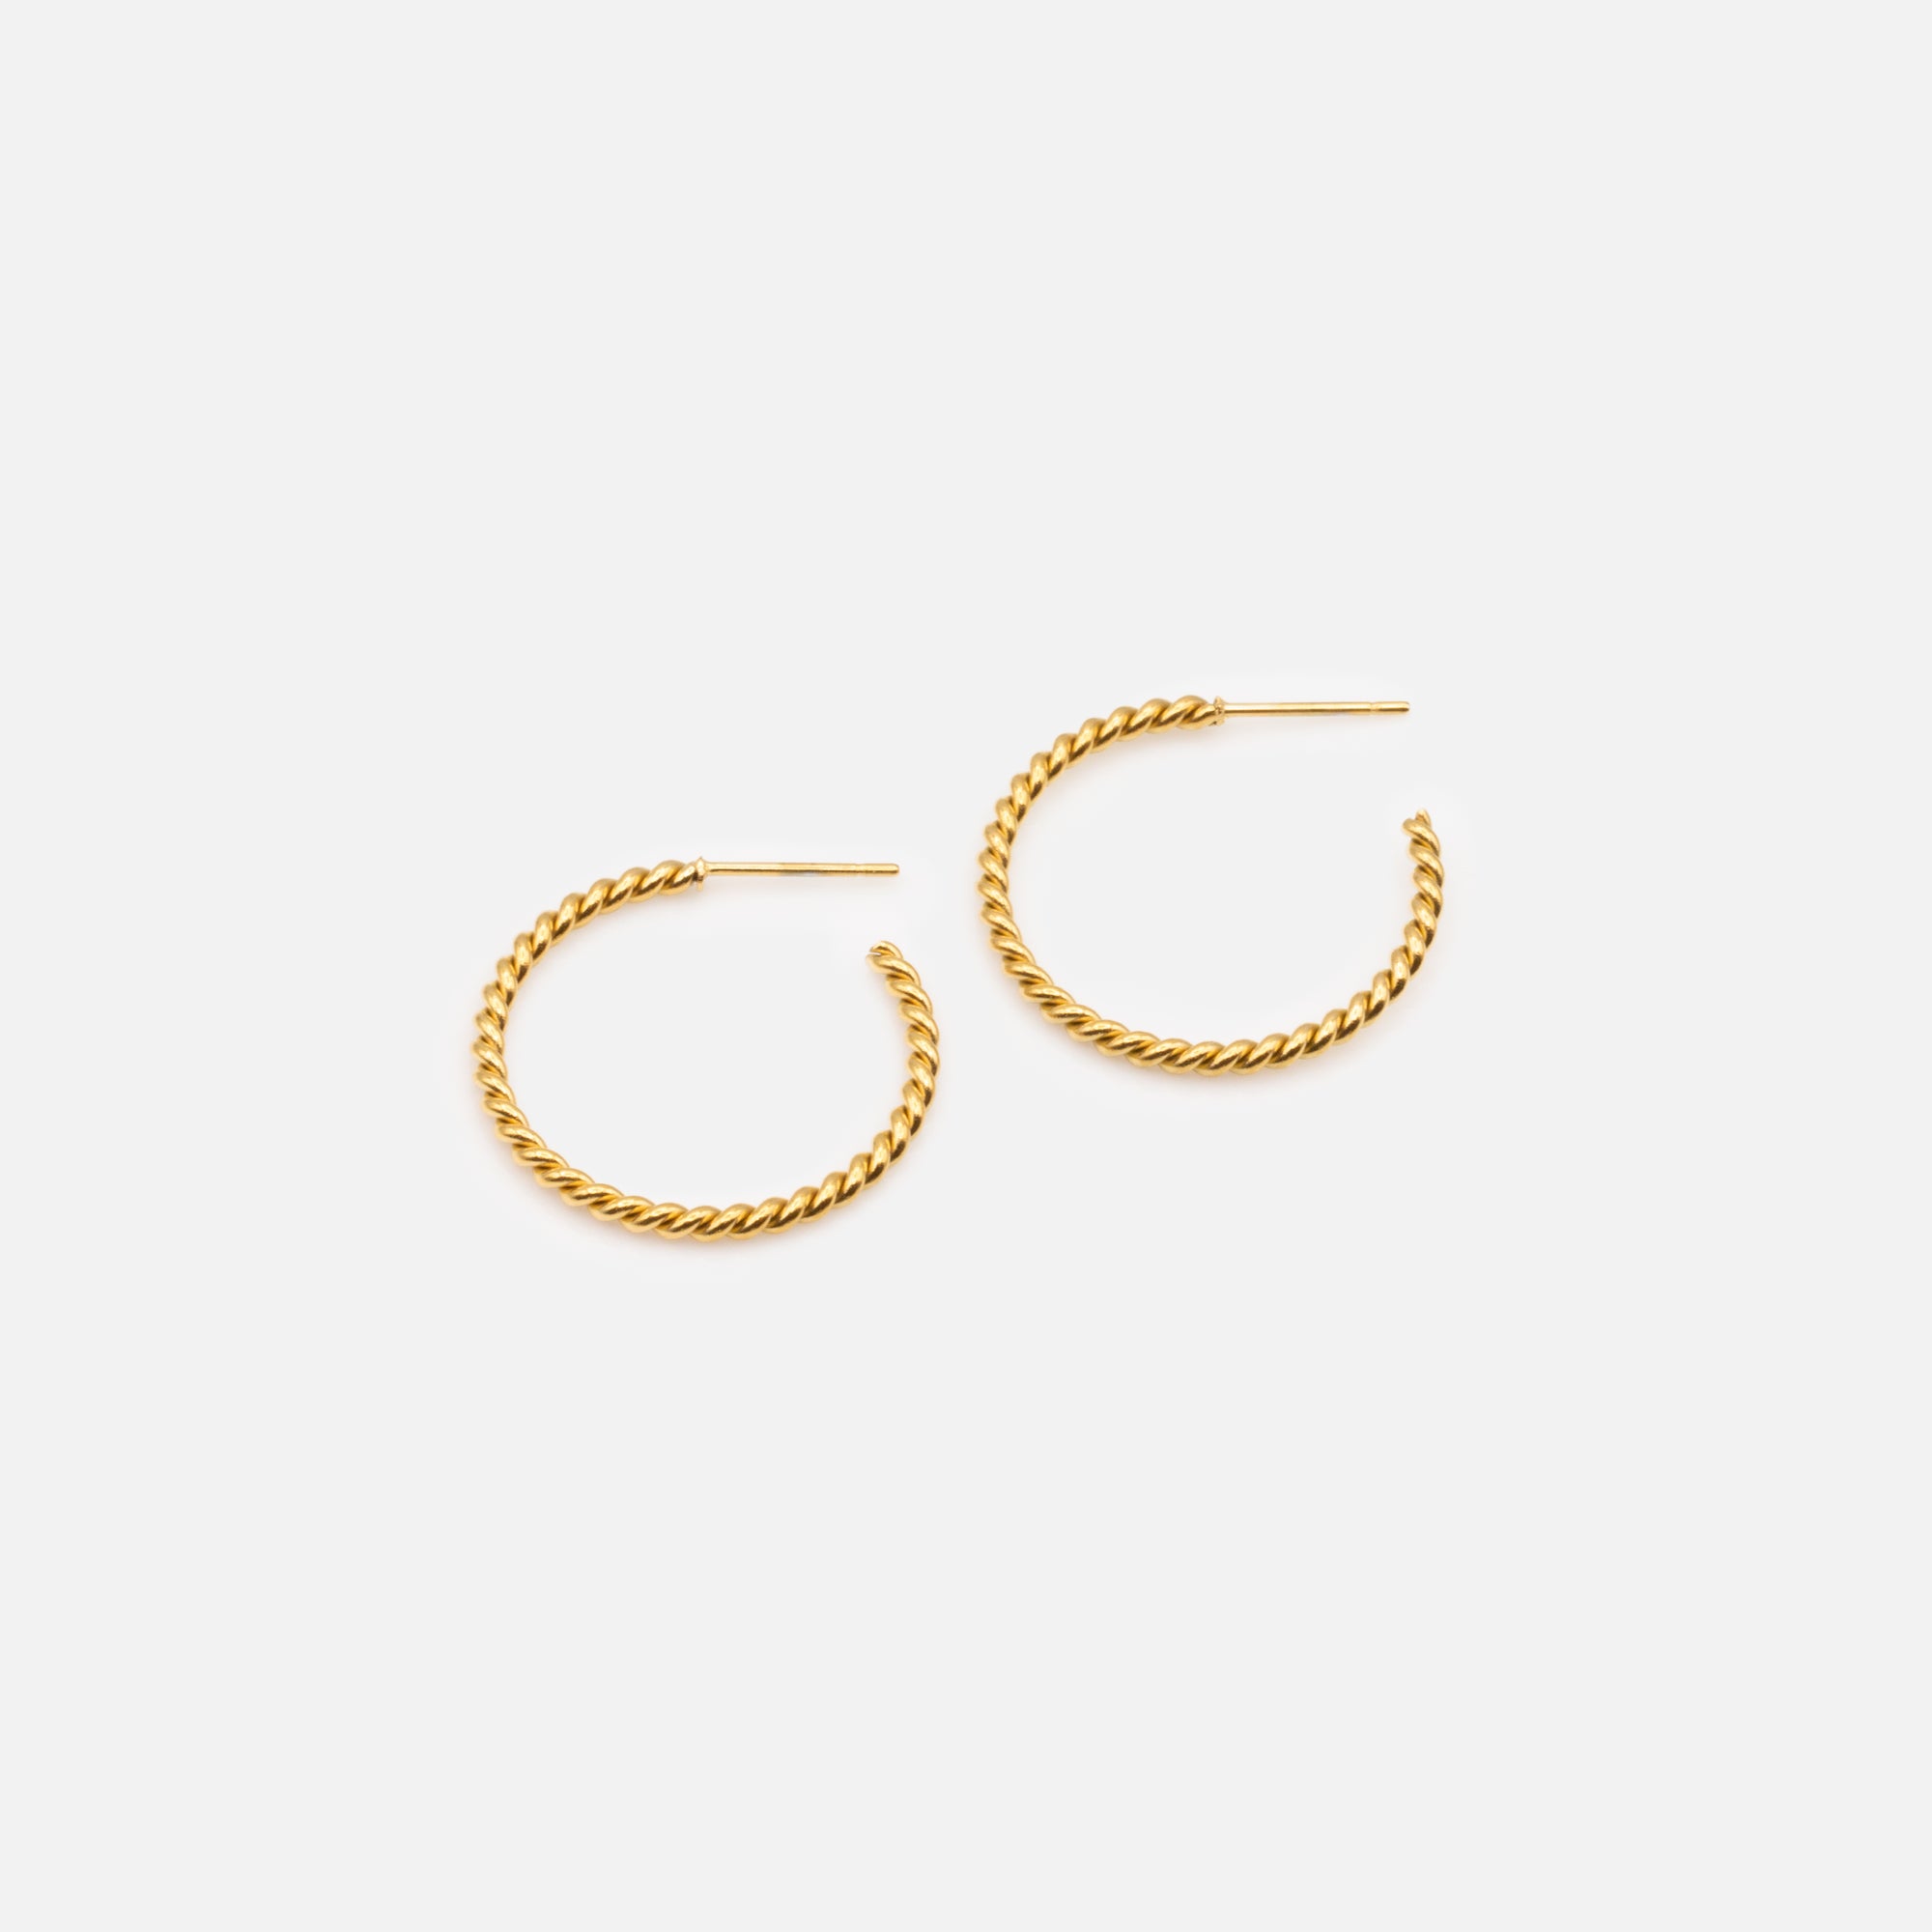 Boucles d'oreilles anneaux fins dorés 25 mm torsadés en acier inoxydable